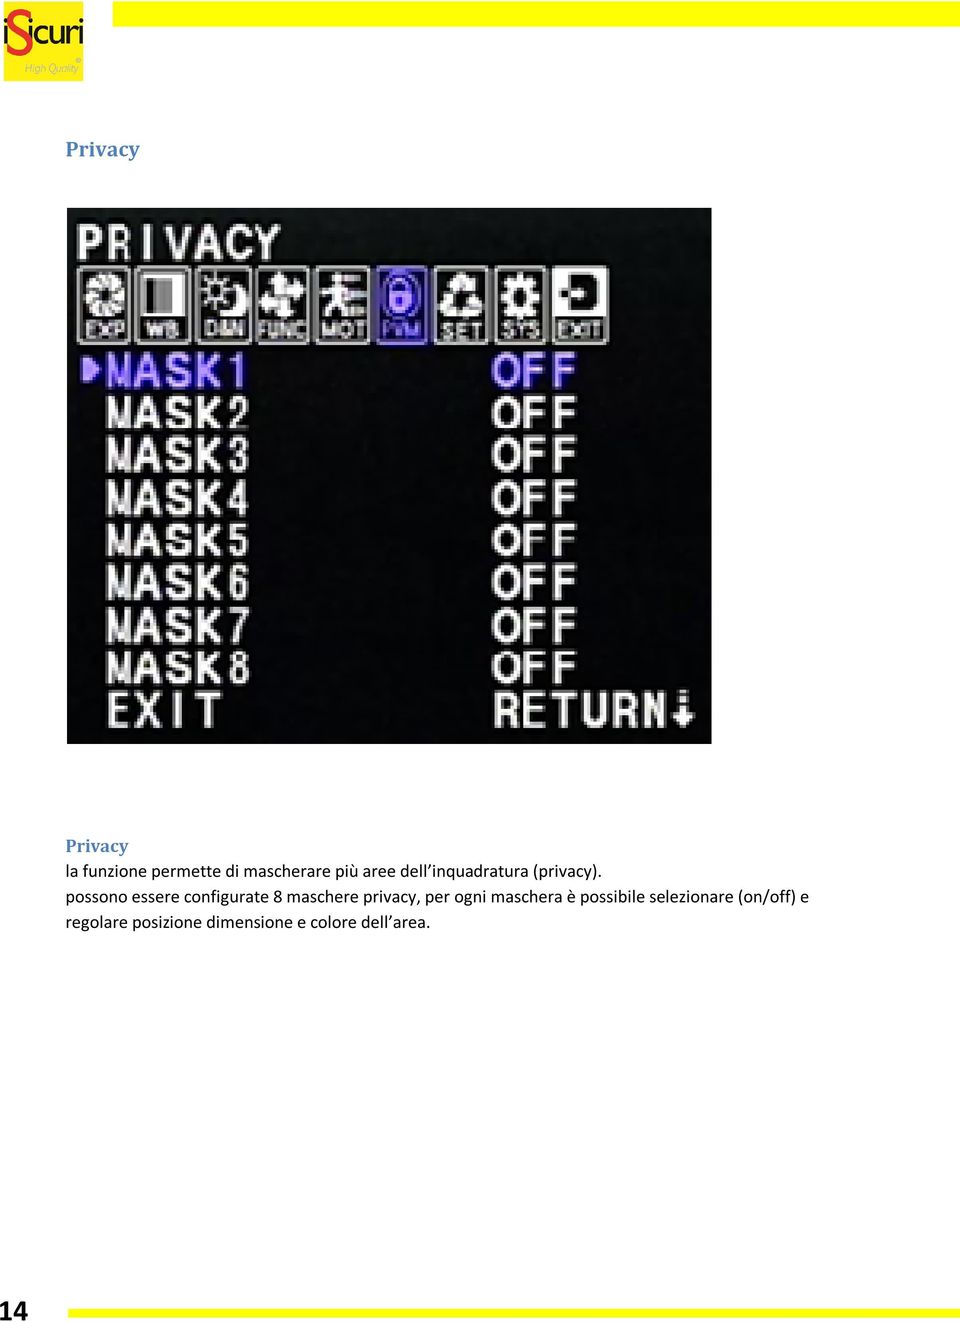 possono essere configurate 8 maschere privacy, per ogni